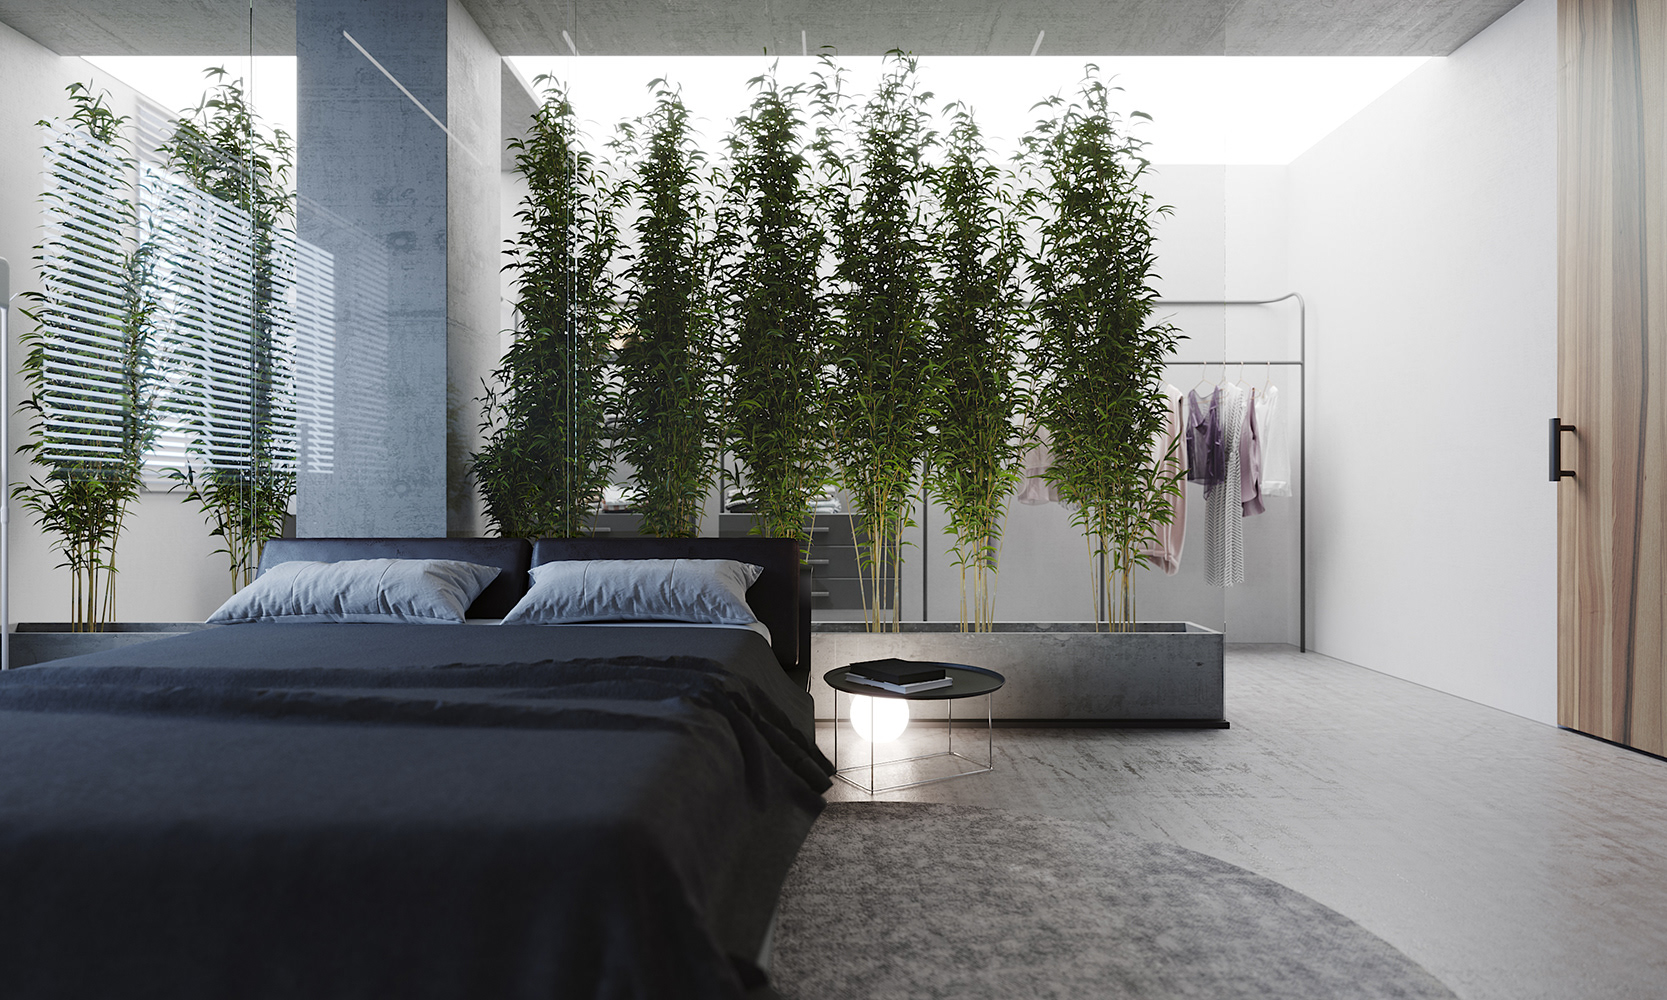 主卧设计简约精致又有几分优雅，暗色床品营造出静谧质感，绿植的融入增加了空间活力。